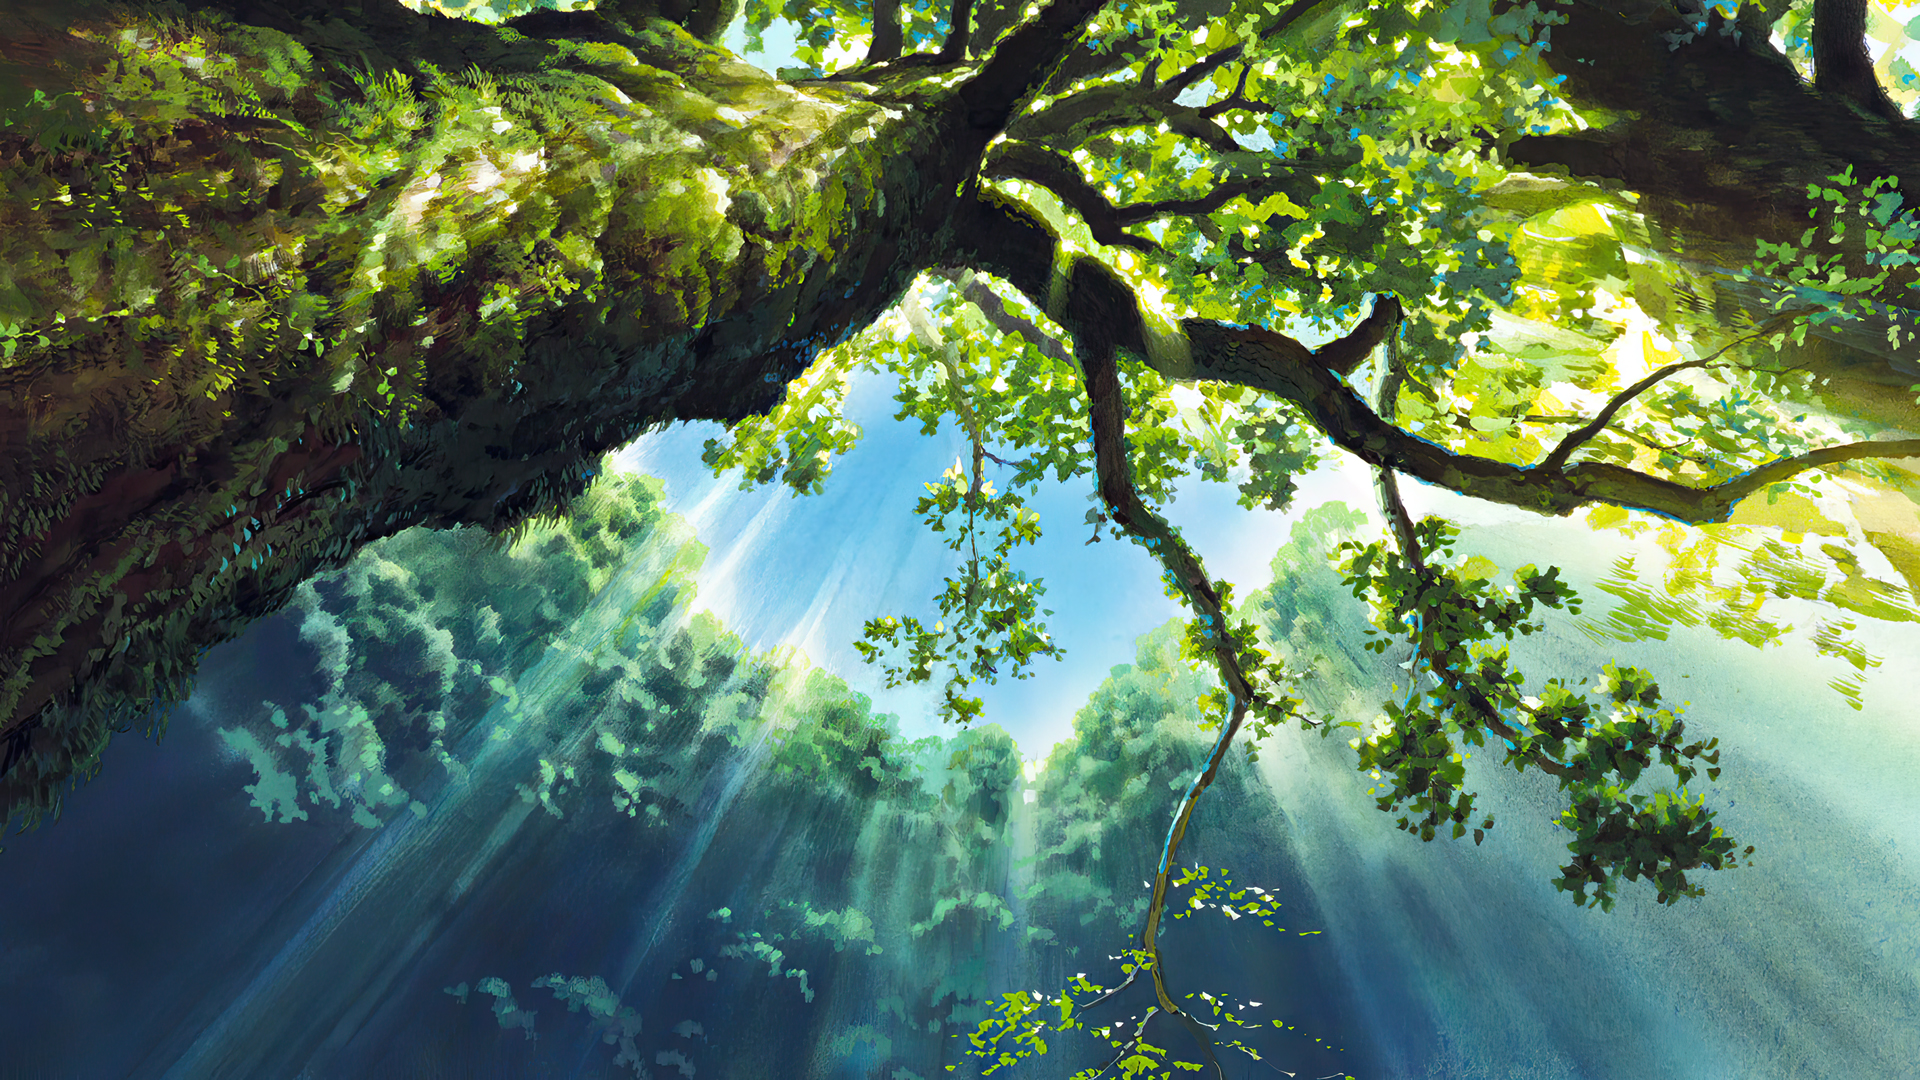 Princess Mononoke Animated Movies Anime Animation Film Stills Studio Ghibli Hayao Miyazaki Trees Sky 1920x1080